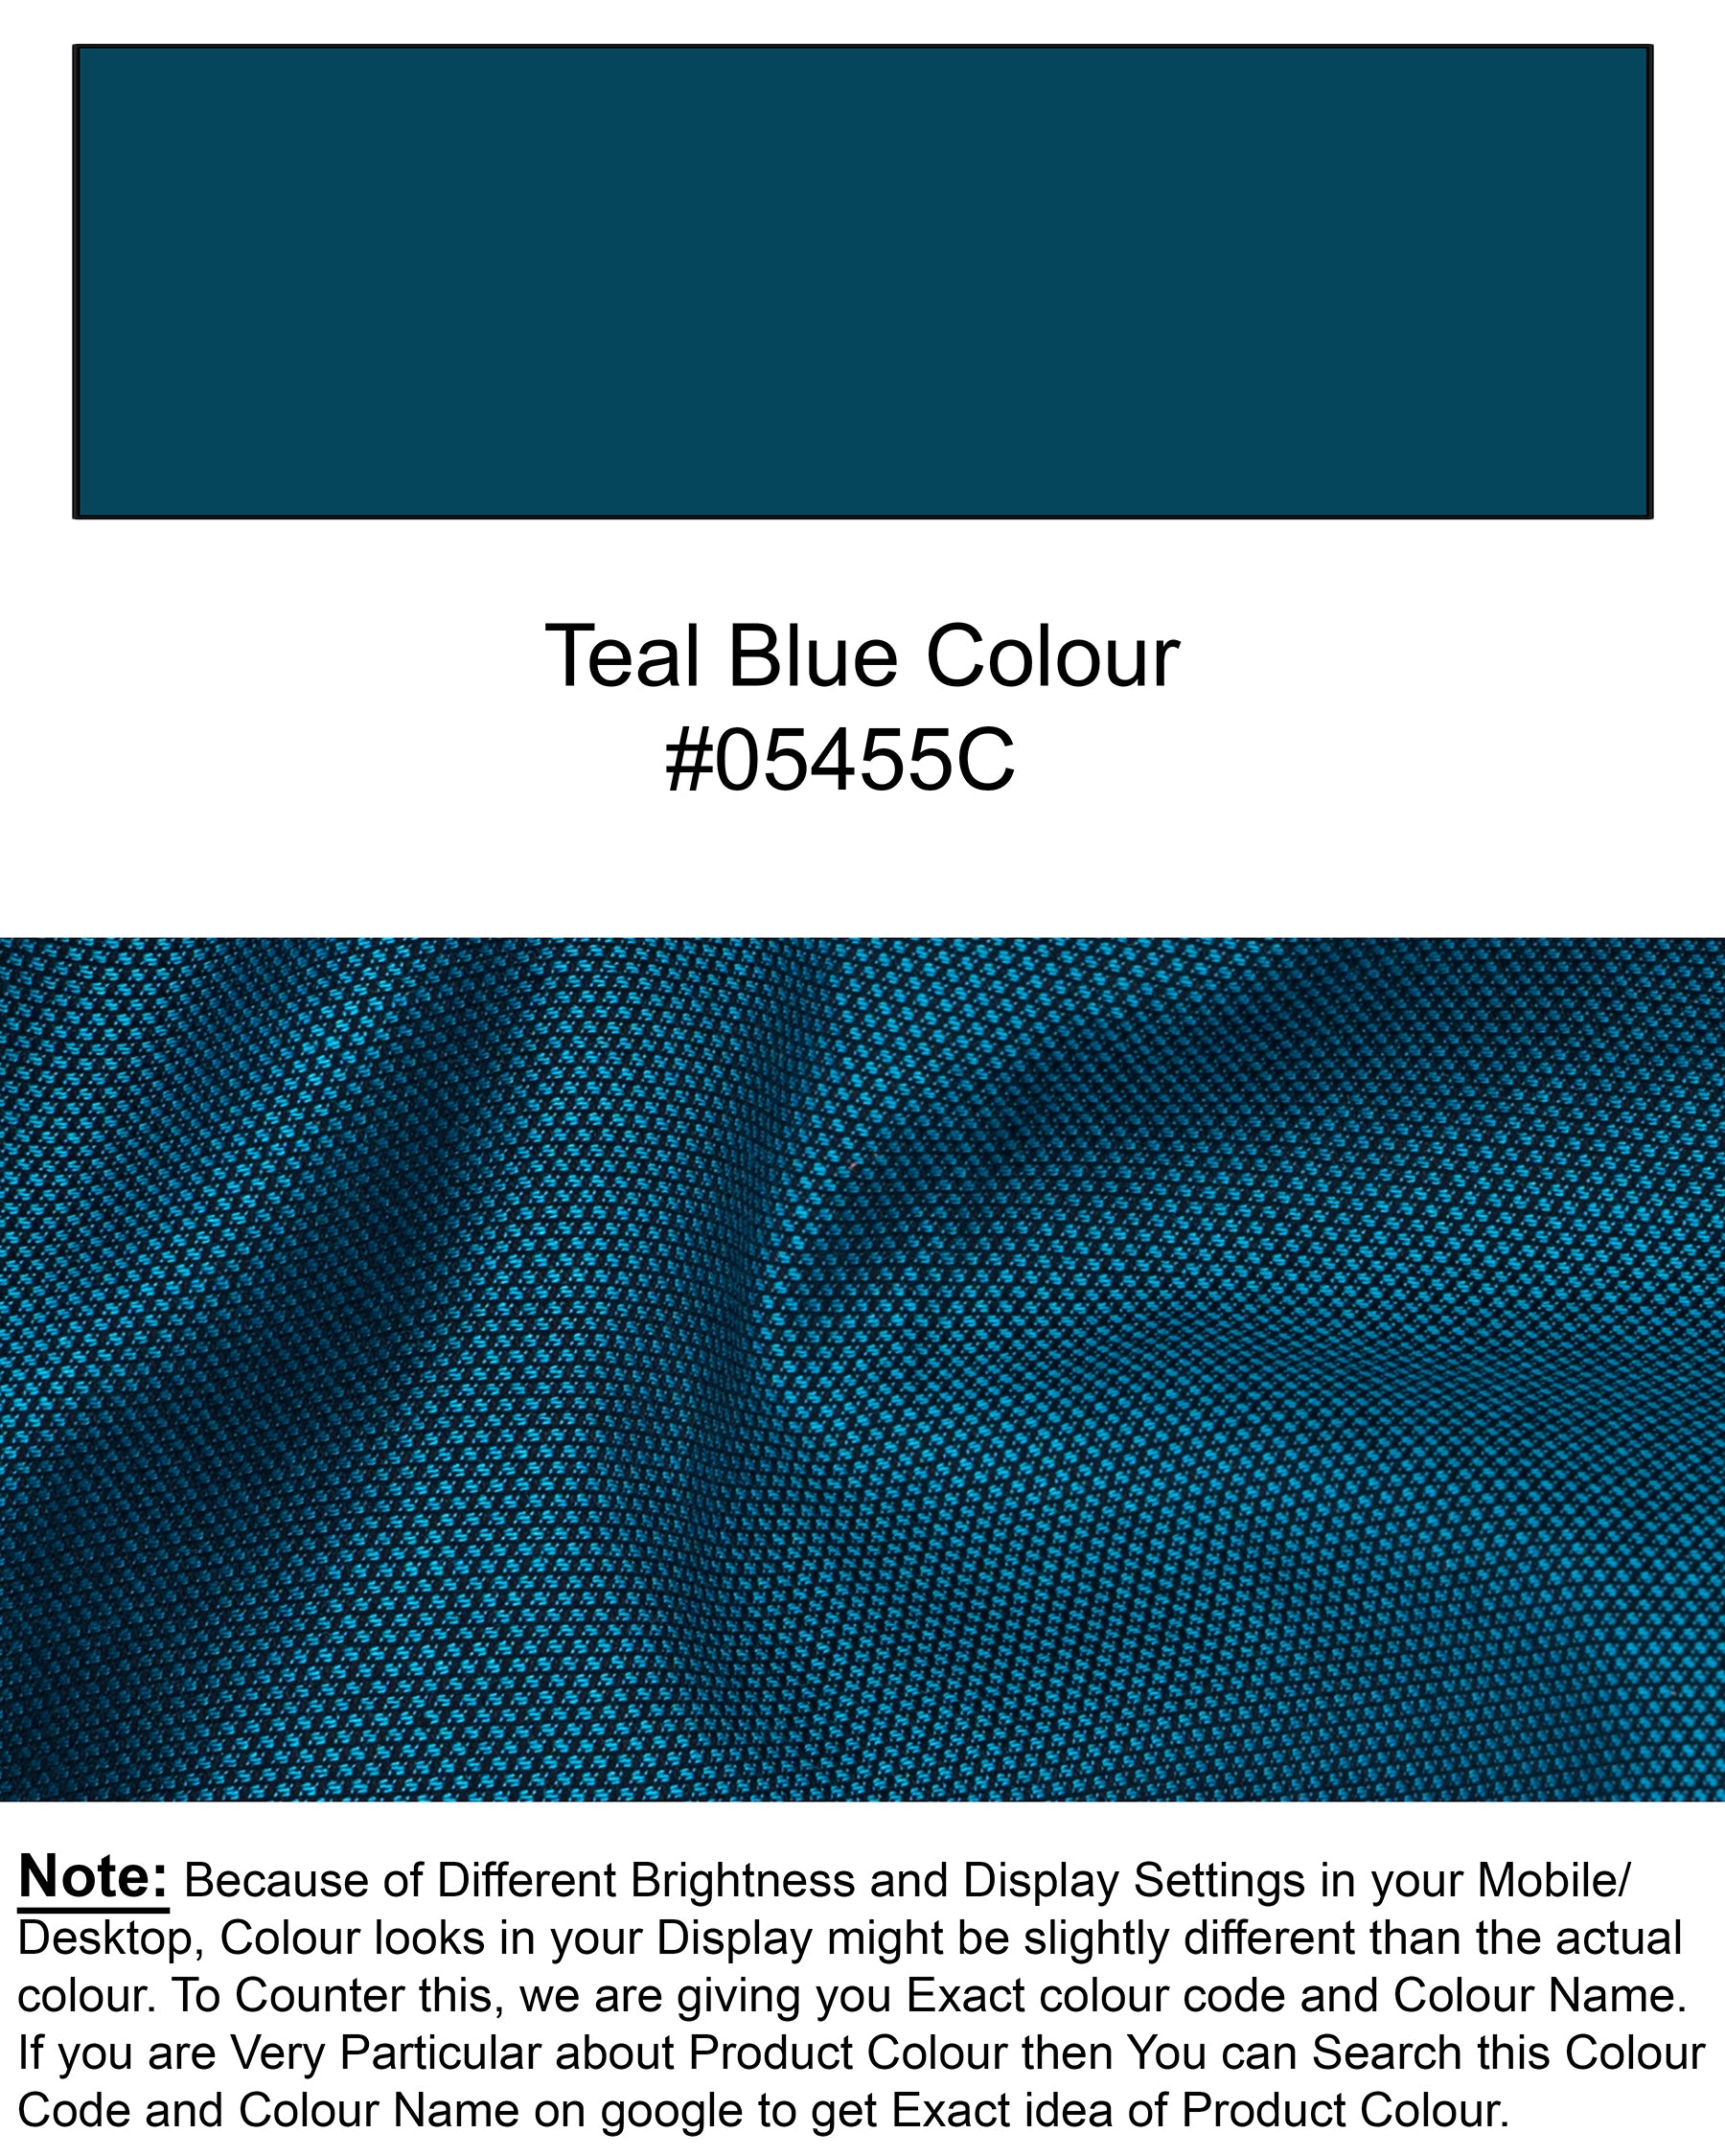 Teal Blue Dobby Textured Premium Giza Cotton Shirt 6601-CA-38,6601-CA-H-38,6601-CA-39,6601-CA-H-39,6601-CA-40,6601-CA-H-40,6601-CA-42,6601-CA-H-42,6601-CA-44,6601-CA-H-44,6601-CA-46,6601-CA-H-46,6601-CA-48,6601-CA-H-48,6601-CA-50,6601-CA-H-50,6601-CA-52,6601-CA-H-52